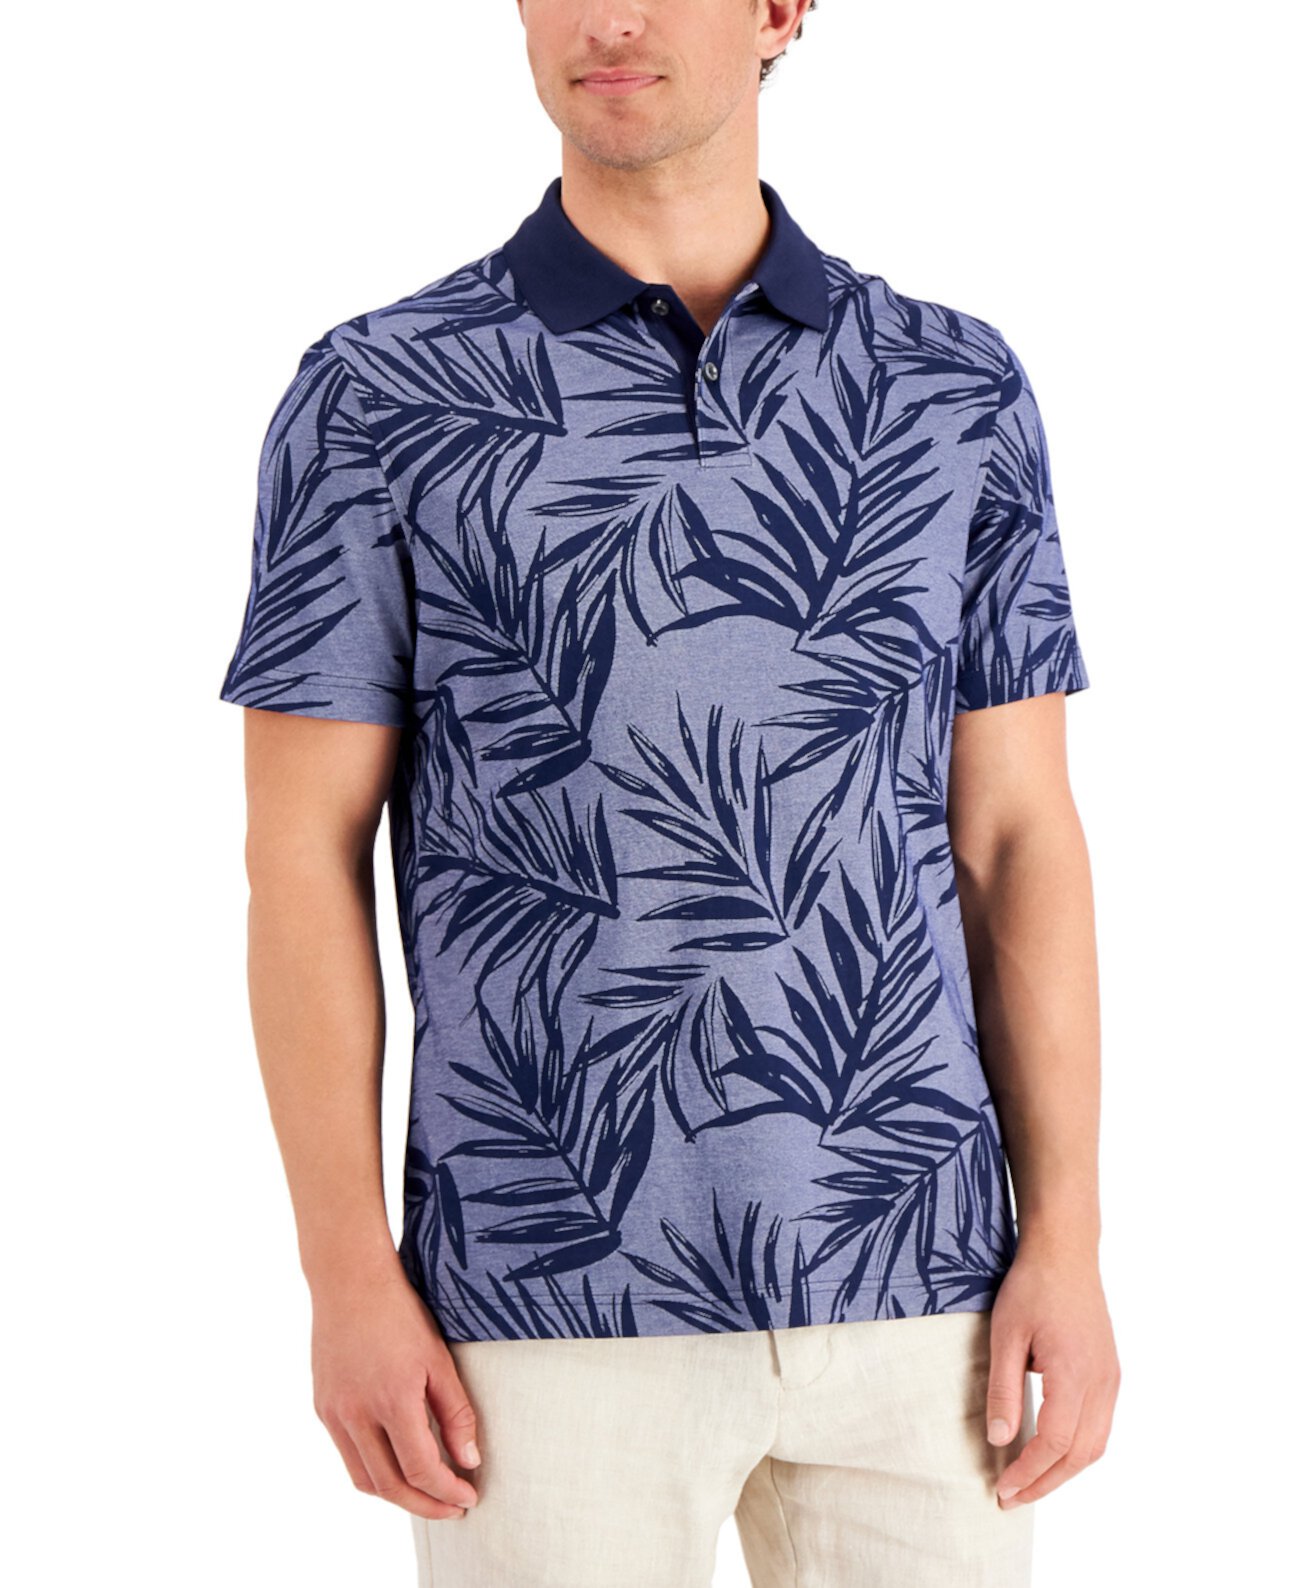 Мужская футболка-поло Darco Leaf с принтом Supima® Blend, созданная для Macy's Tasso Elba